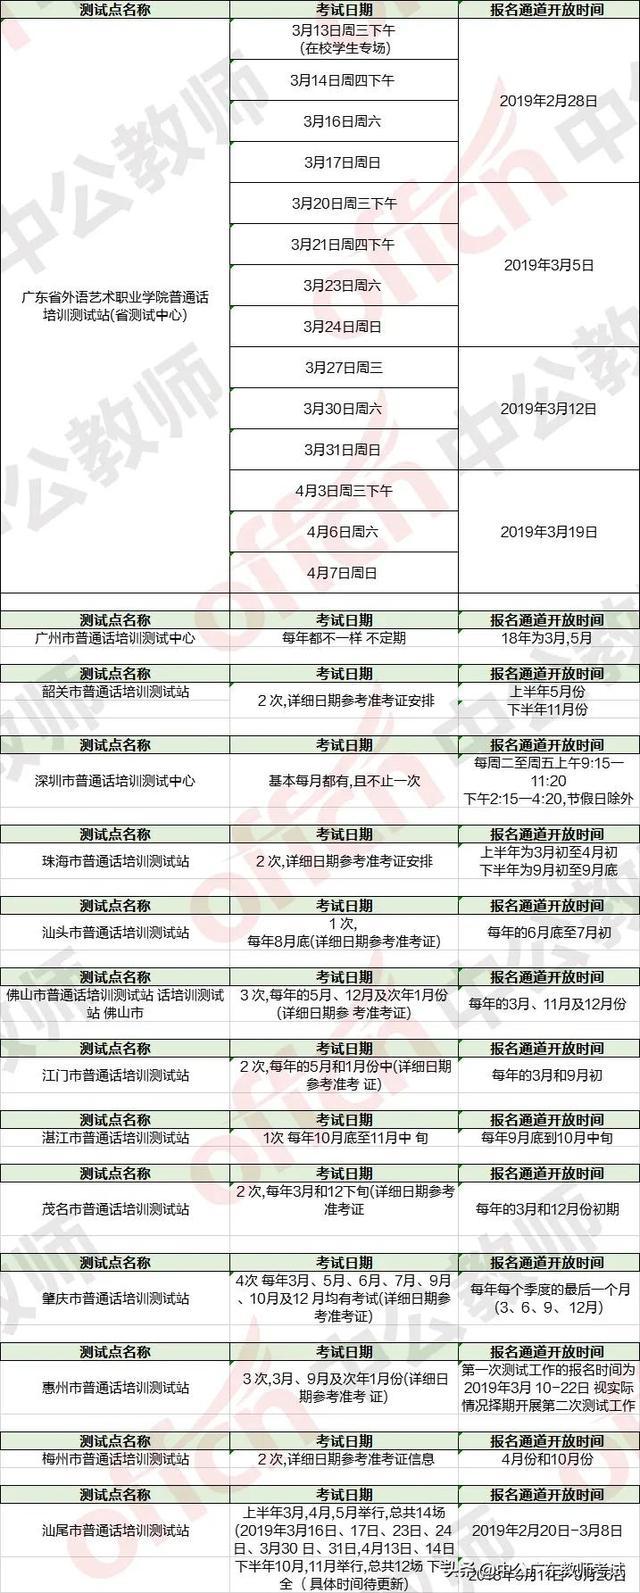 广东全年普通话测试时间安排表「建议收藏」